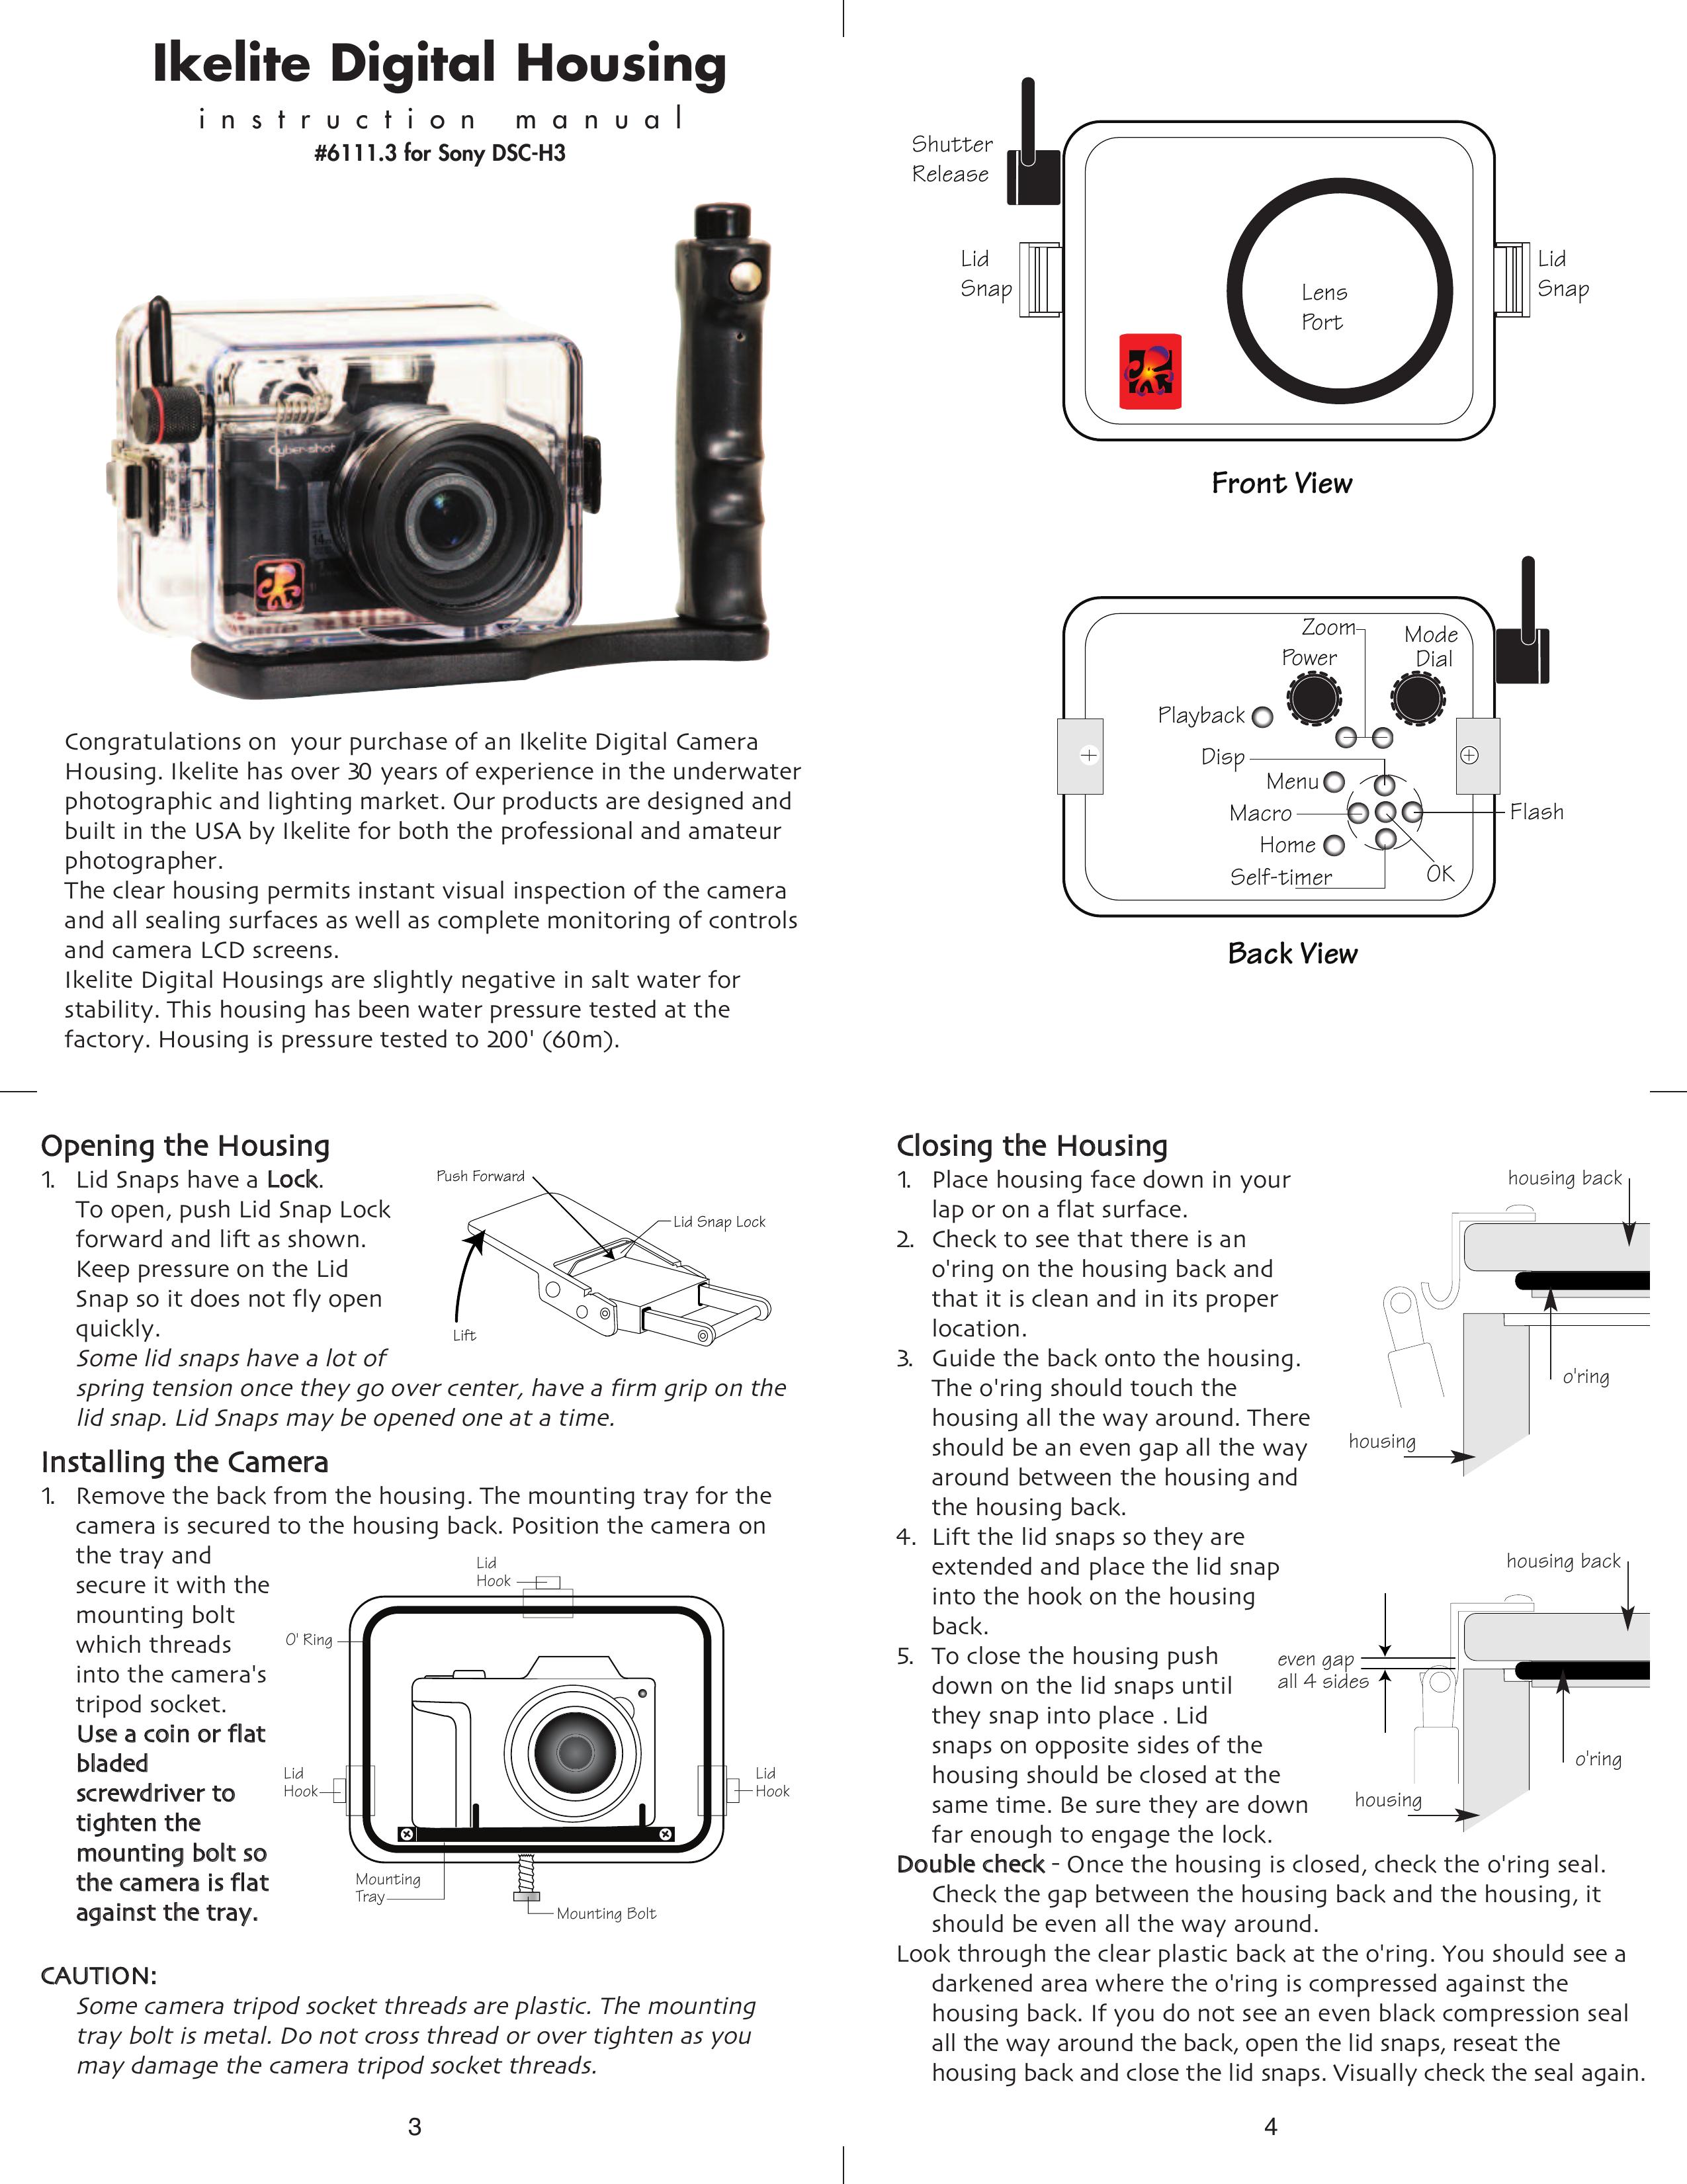 Ikelite DSC-H3 Digital Camera User Manual